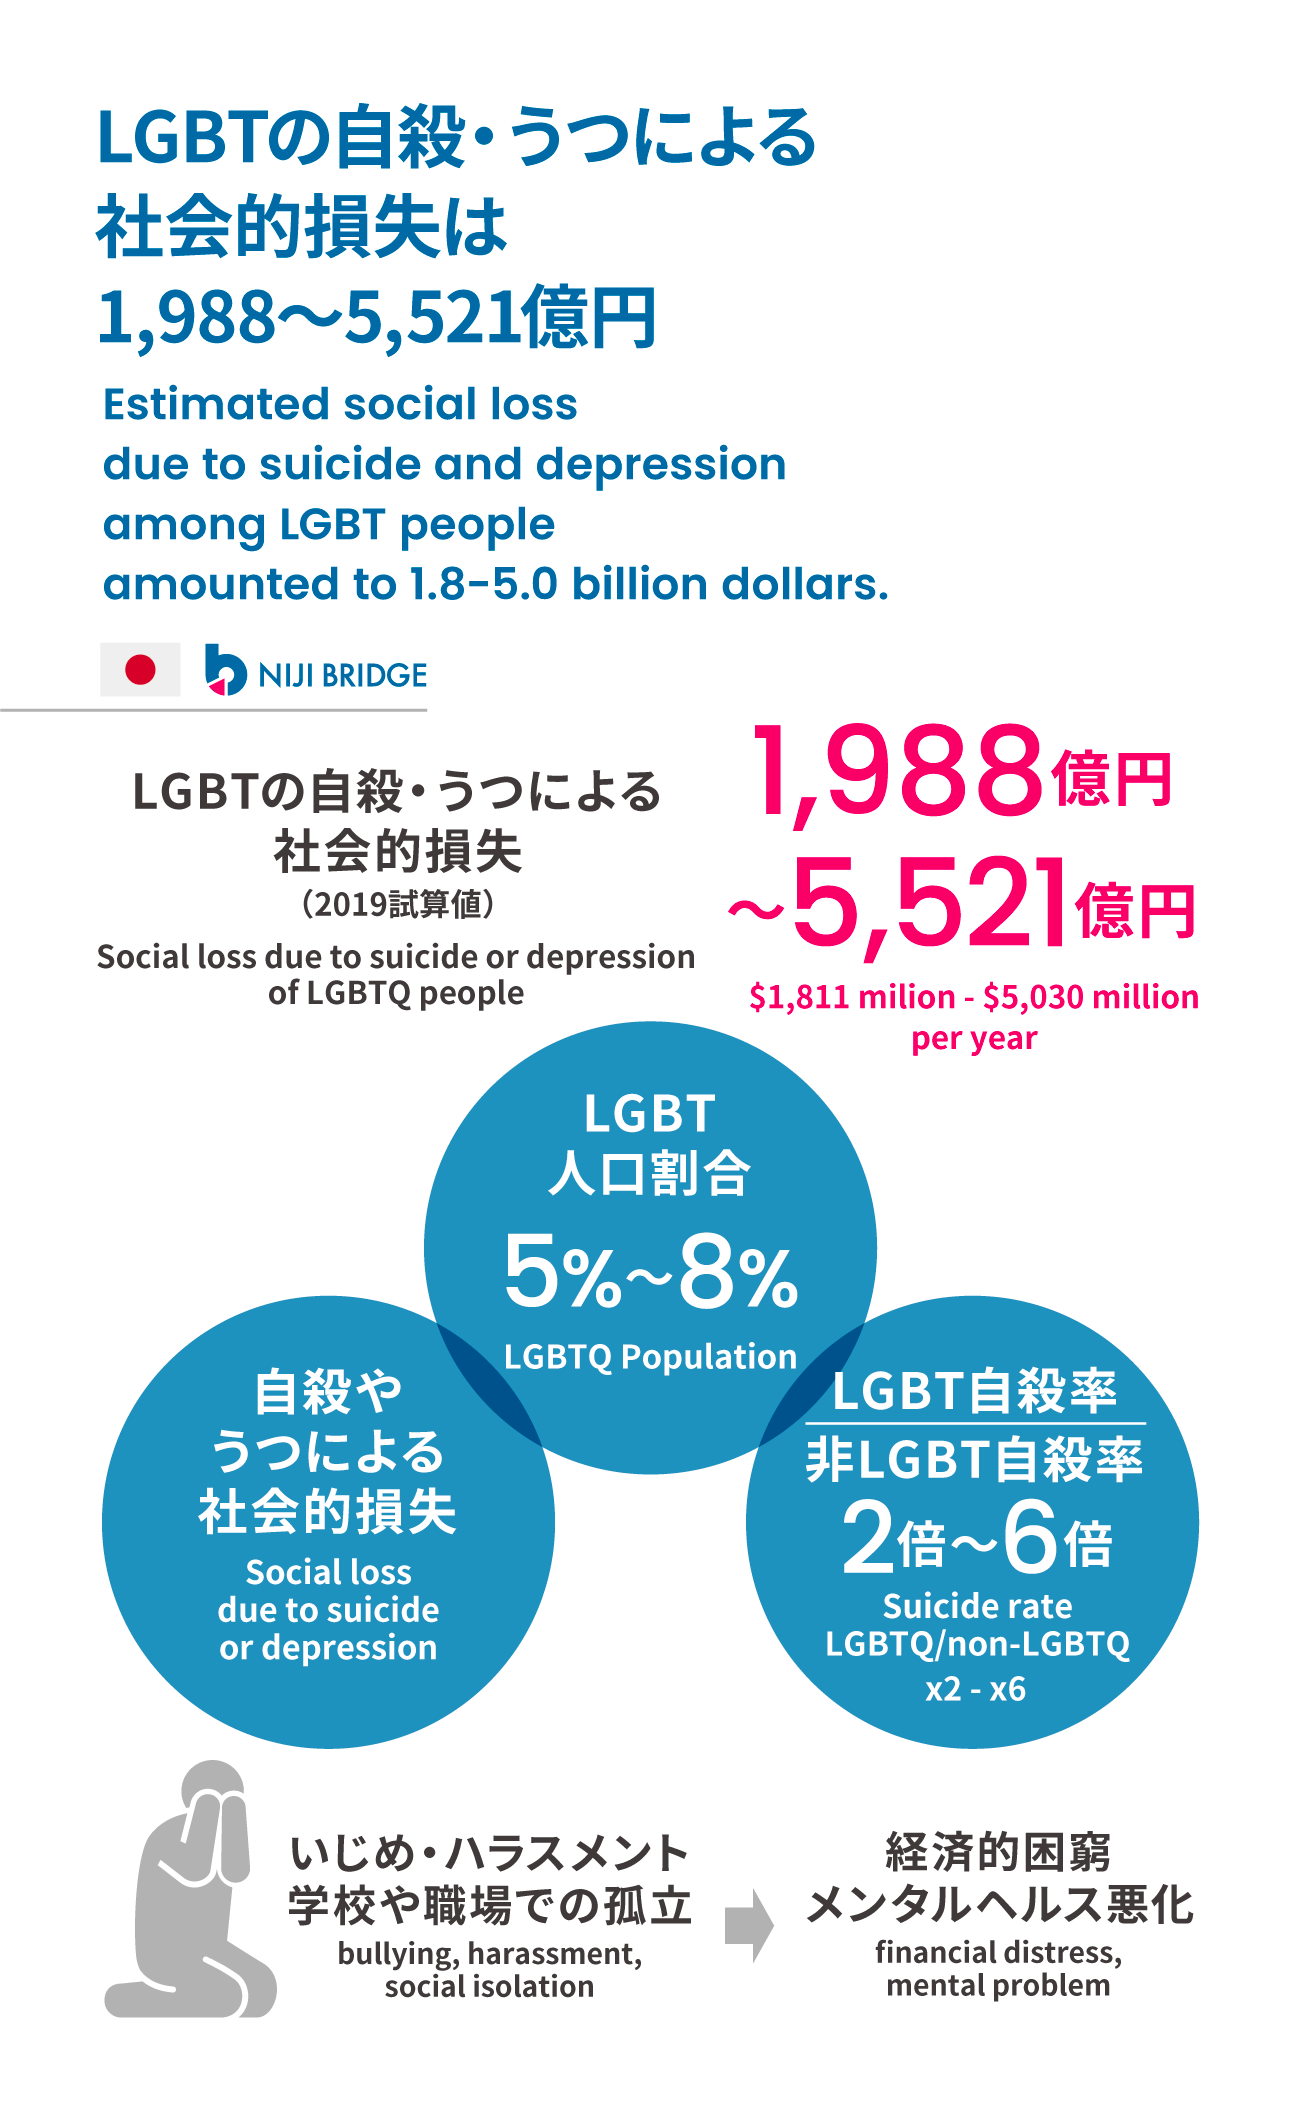 LGBTの自殺・うつによる社会的損失は 1,988〜5,521億円